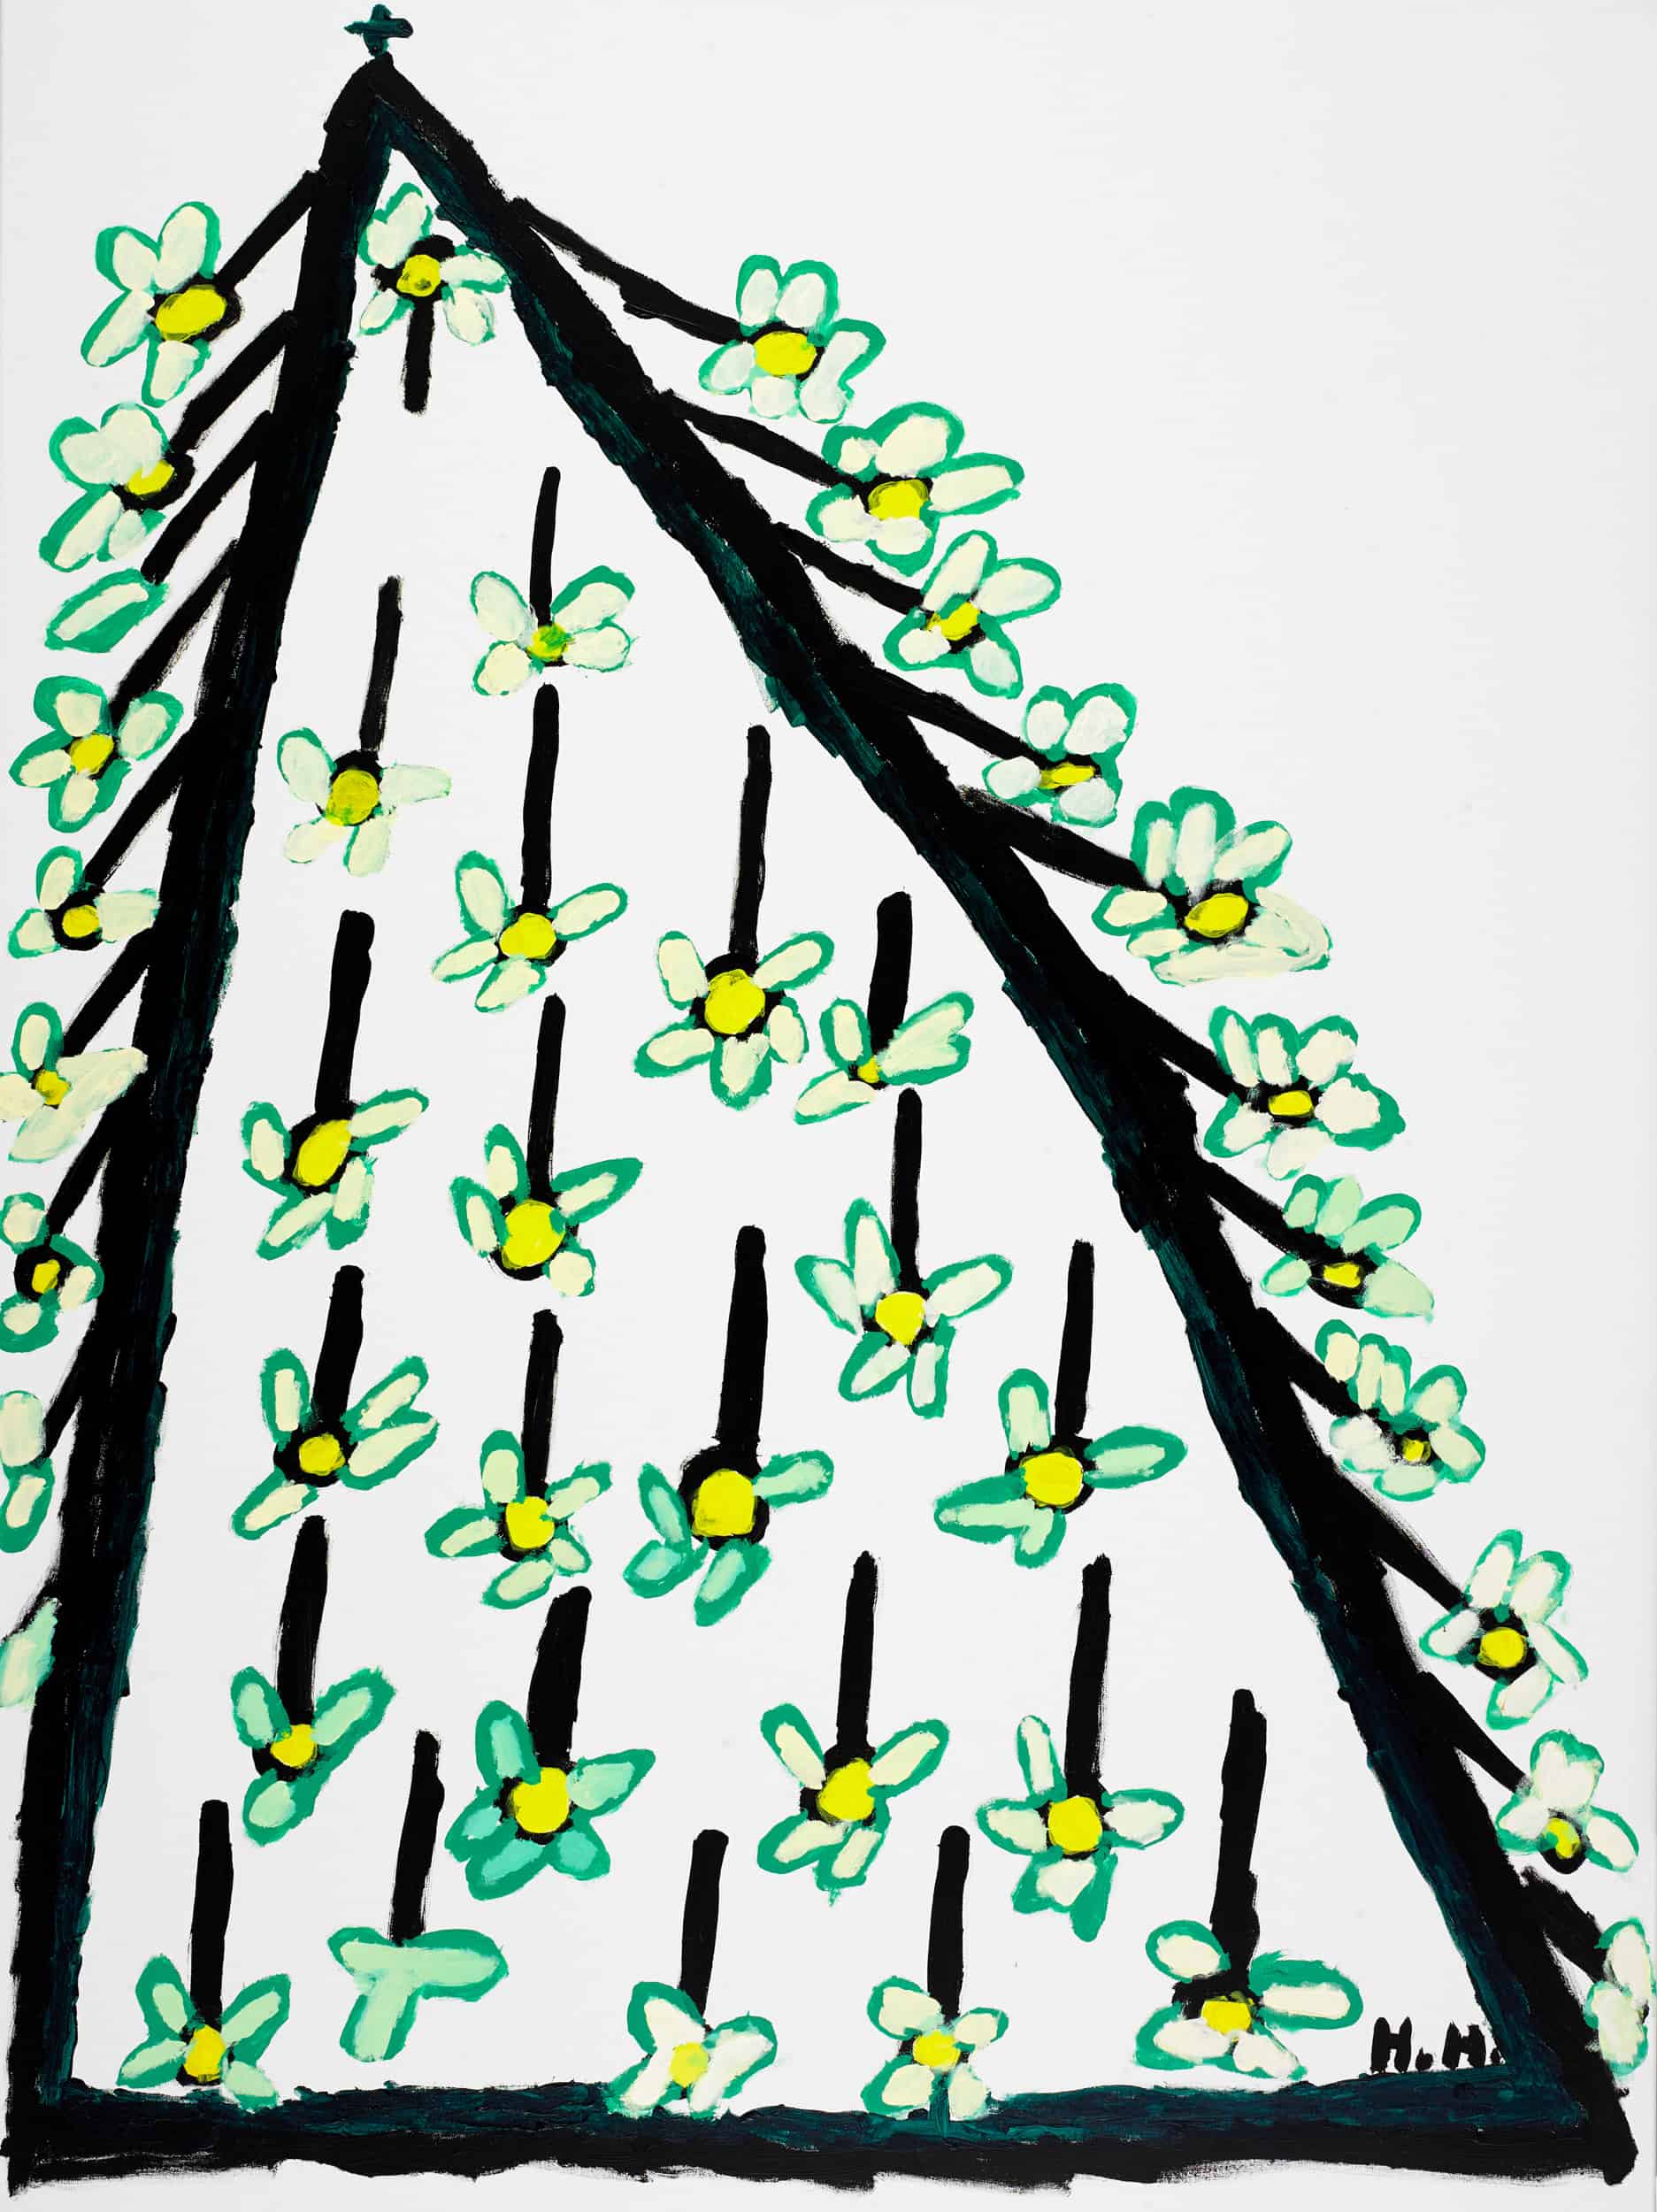 hladisch helmut - Blütenbaum / Flowering tree